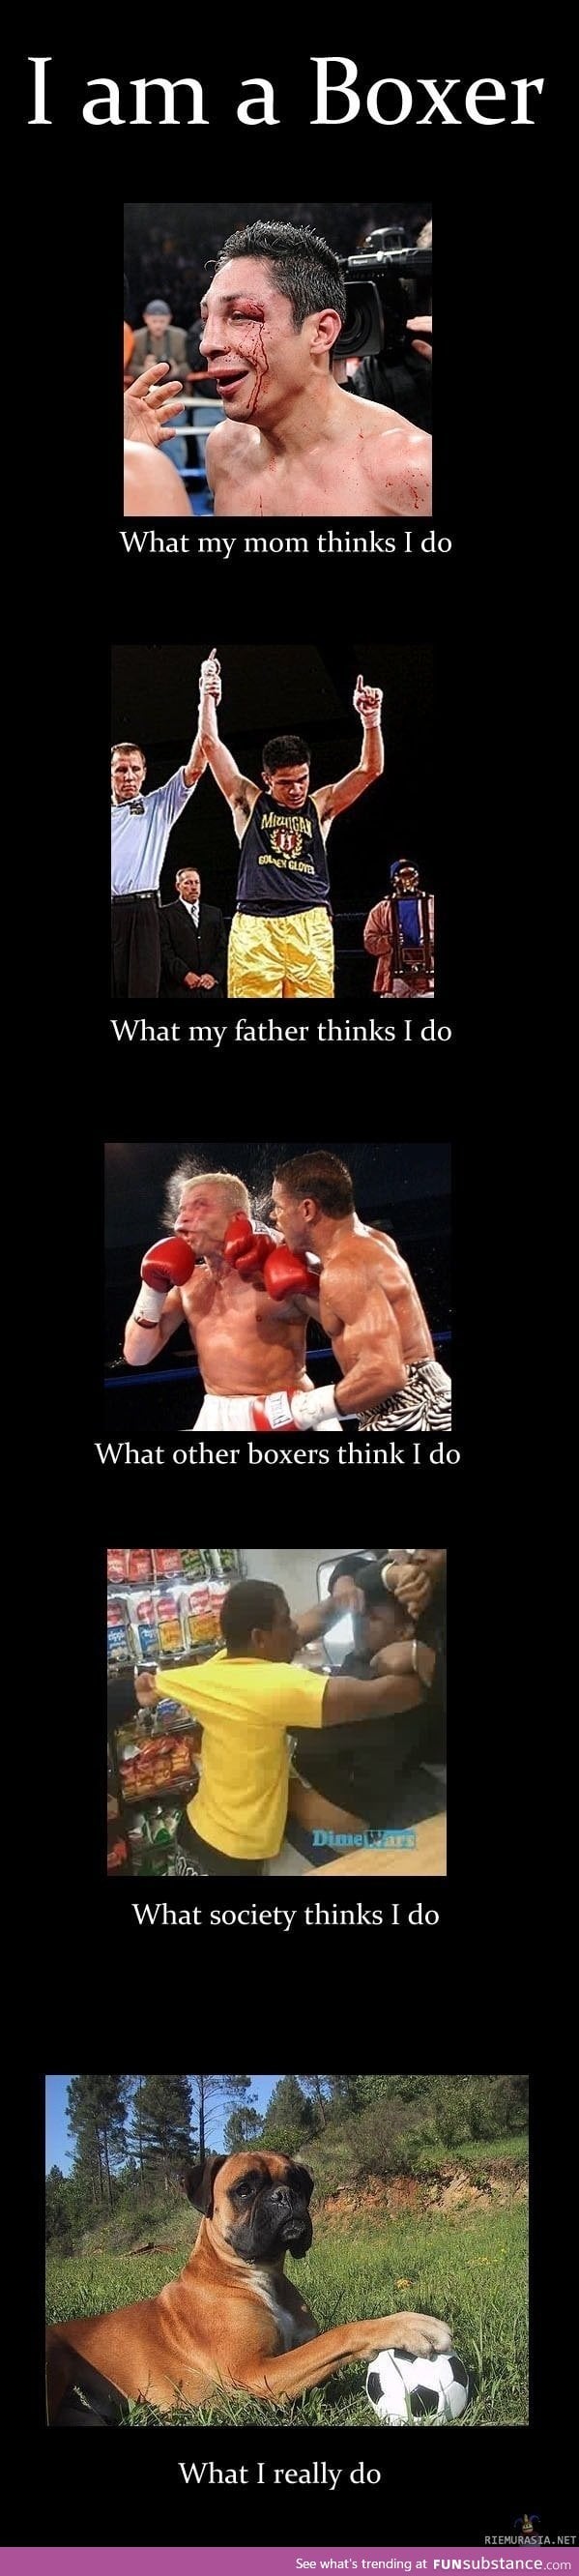 Boxers are misunderstood